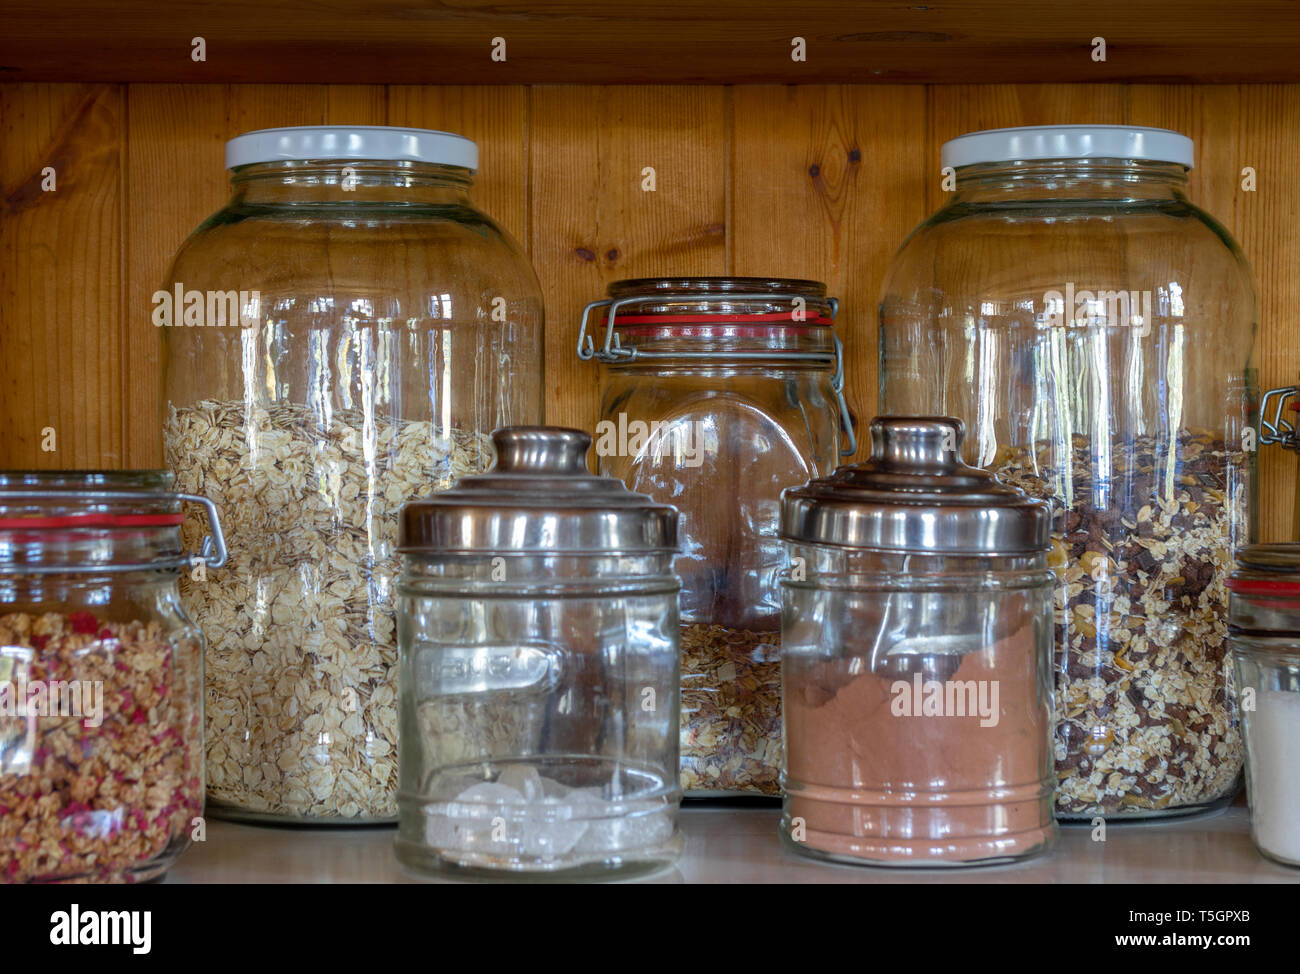 Les aliments secs comme le cacao, le sucre et le muesli respectueux stockées dans des bocaux en verre Banque D'Images